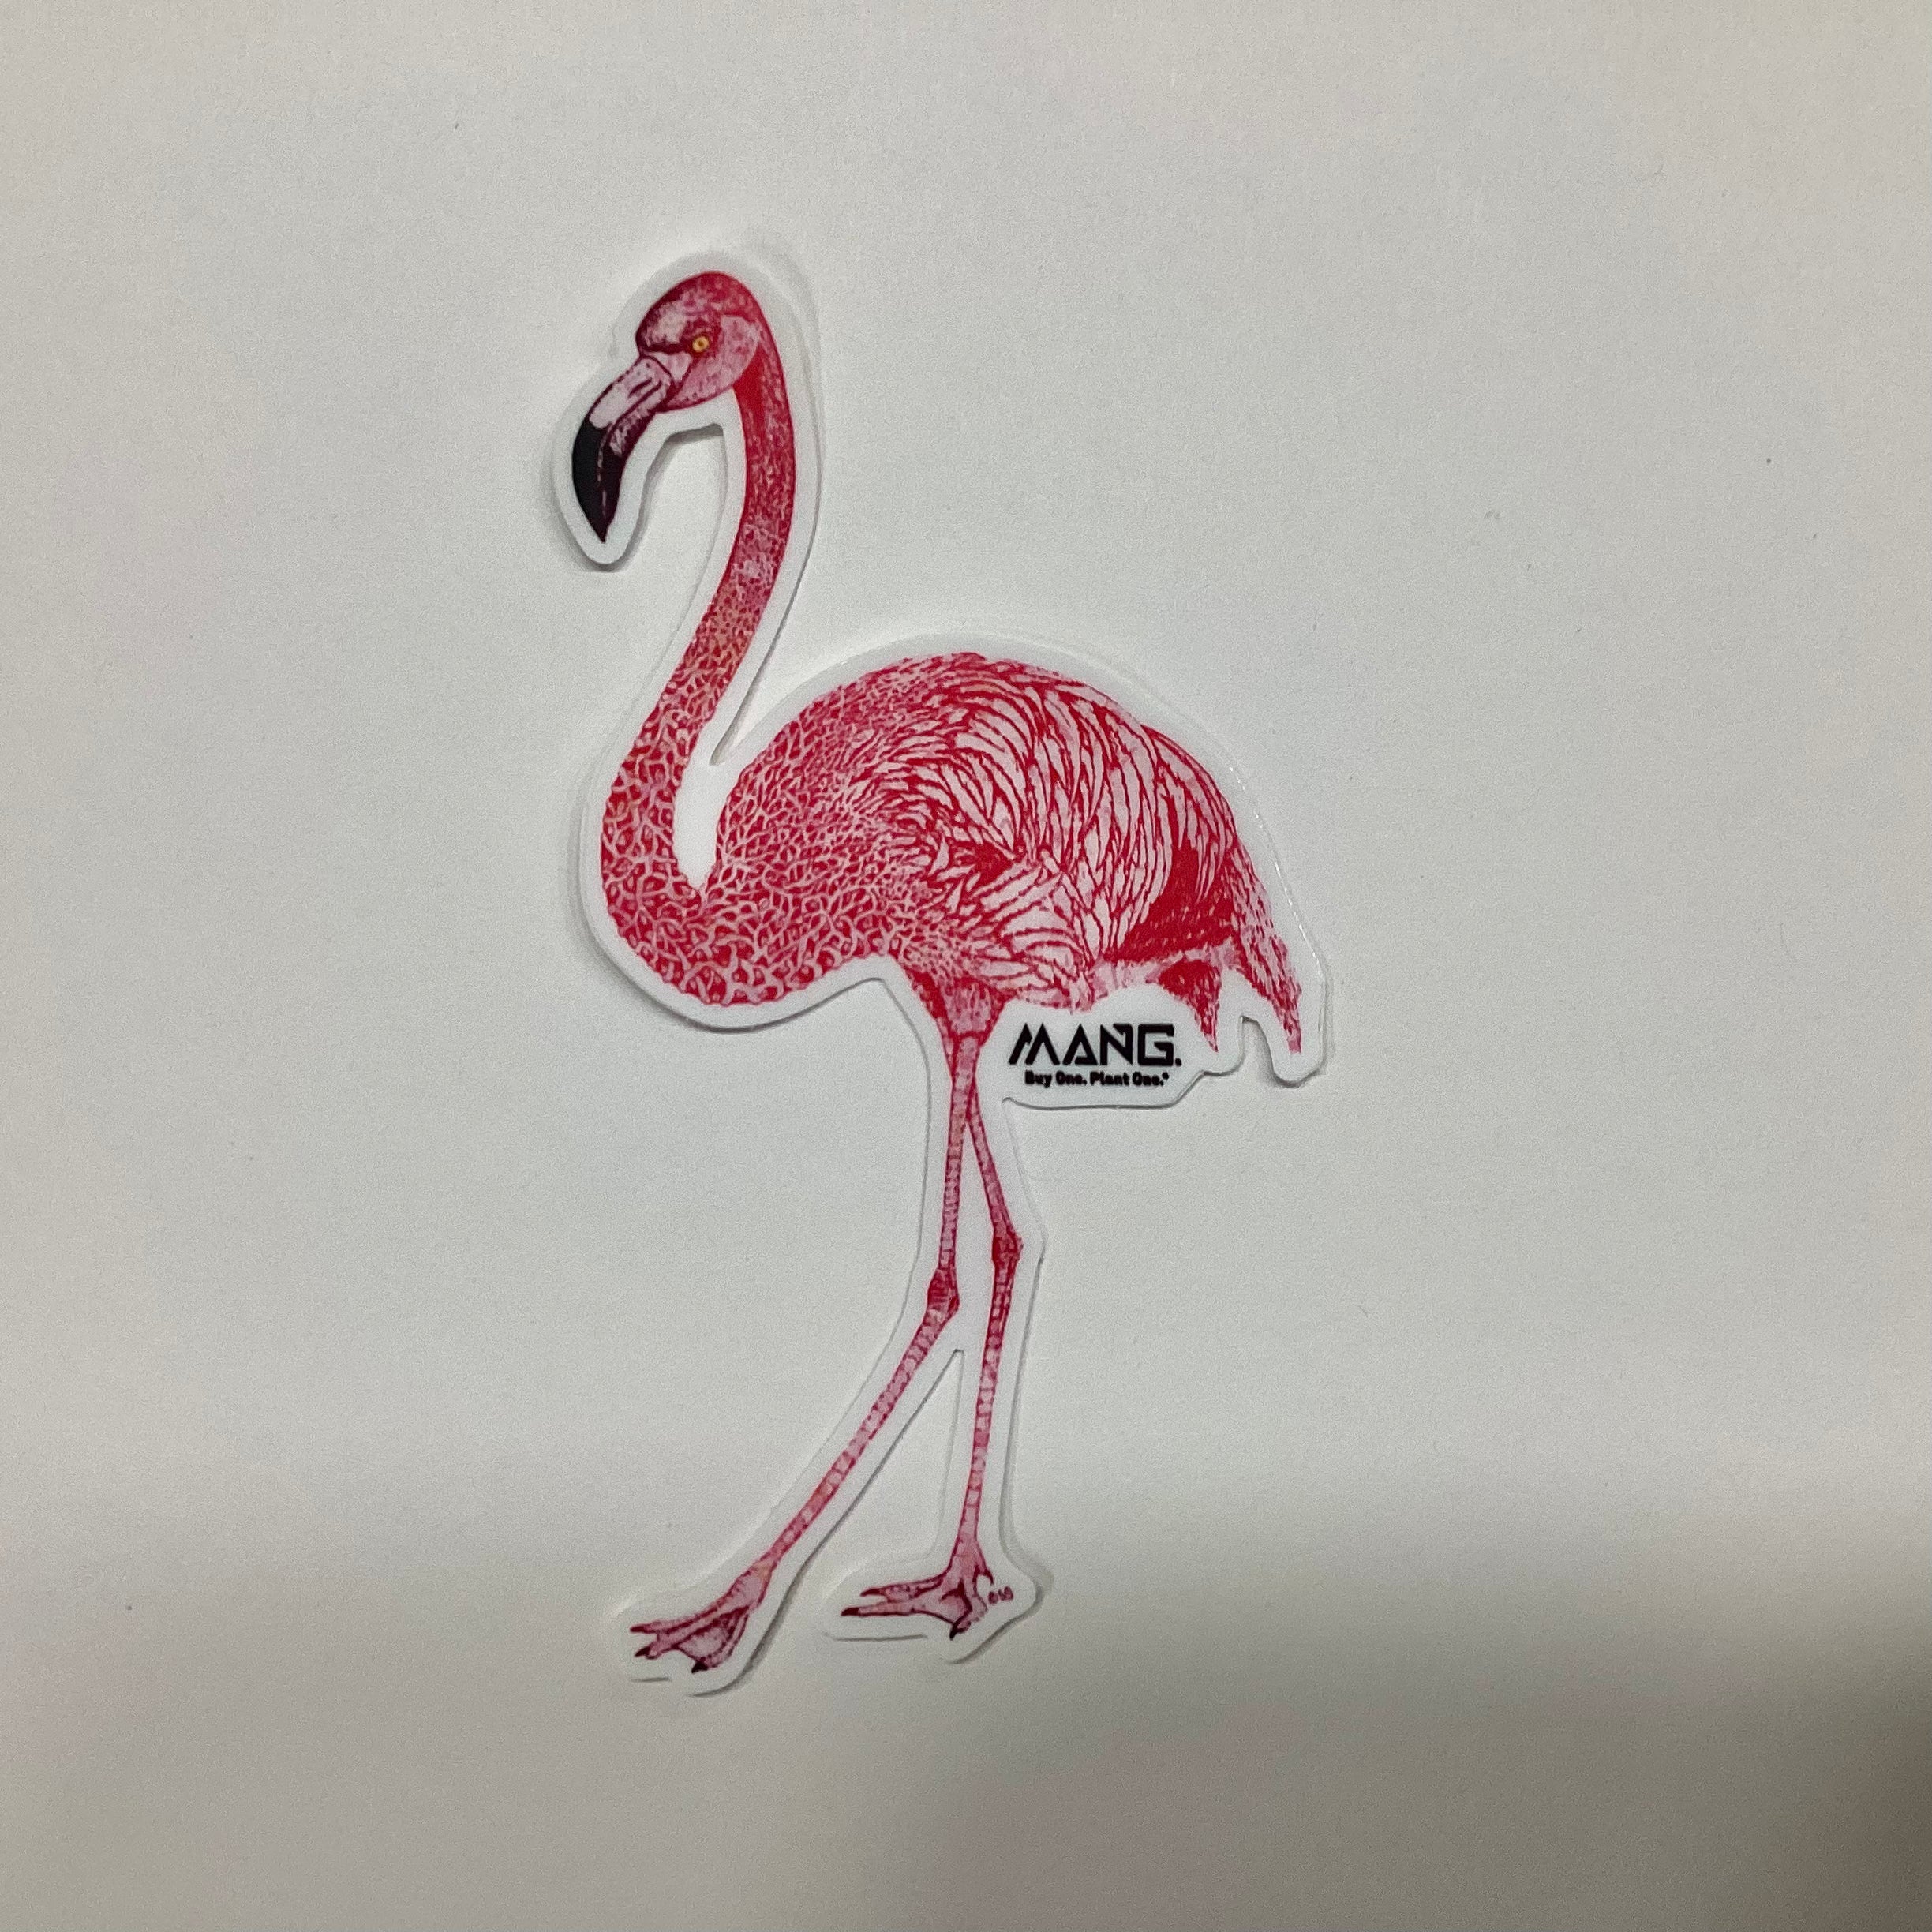 Flamingo MANG - Sticker